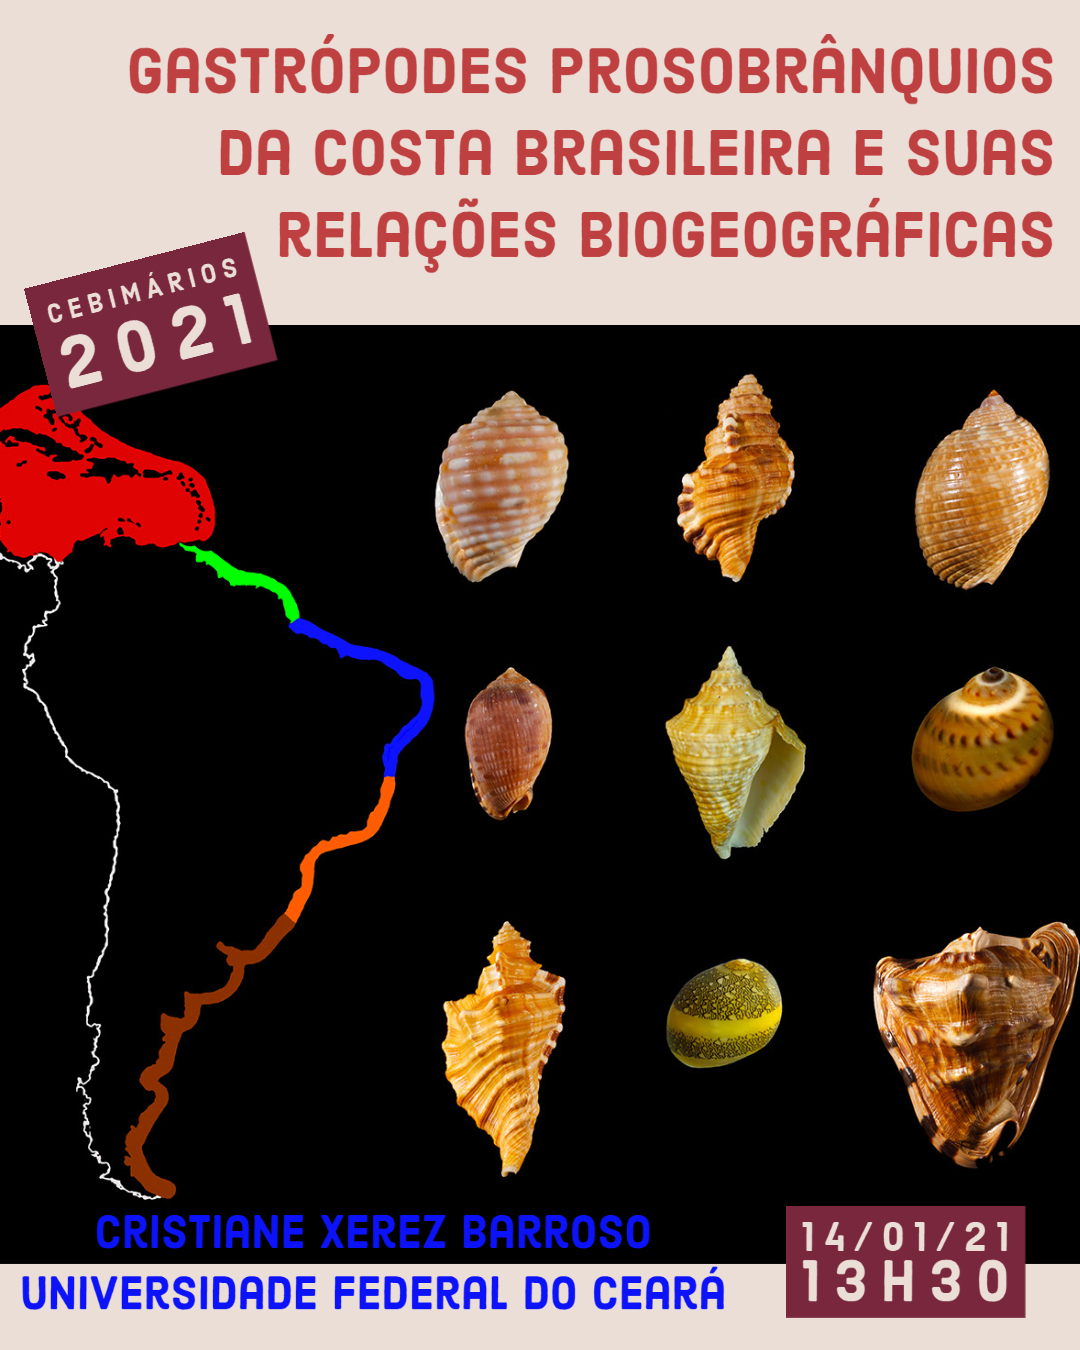 CEBIMário: Gastrópodes prosobrânquios da costa brasileira e suas relações biogeográficas